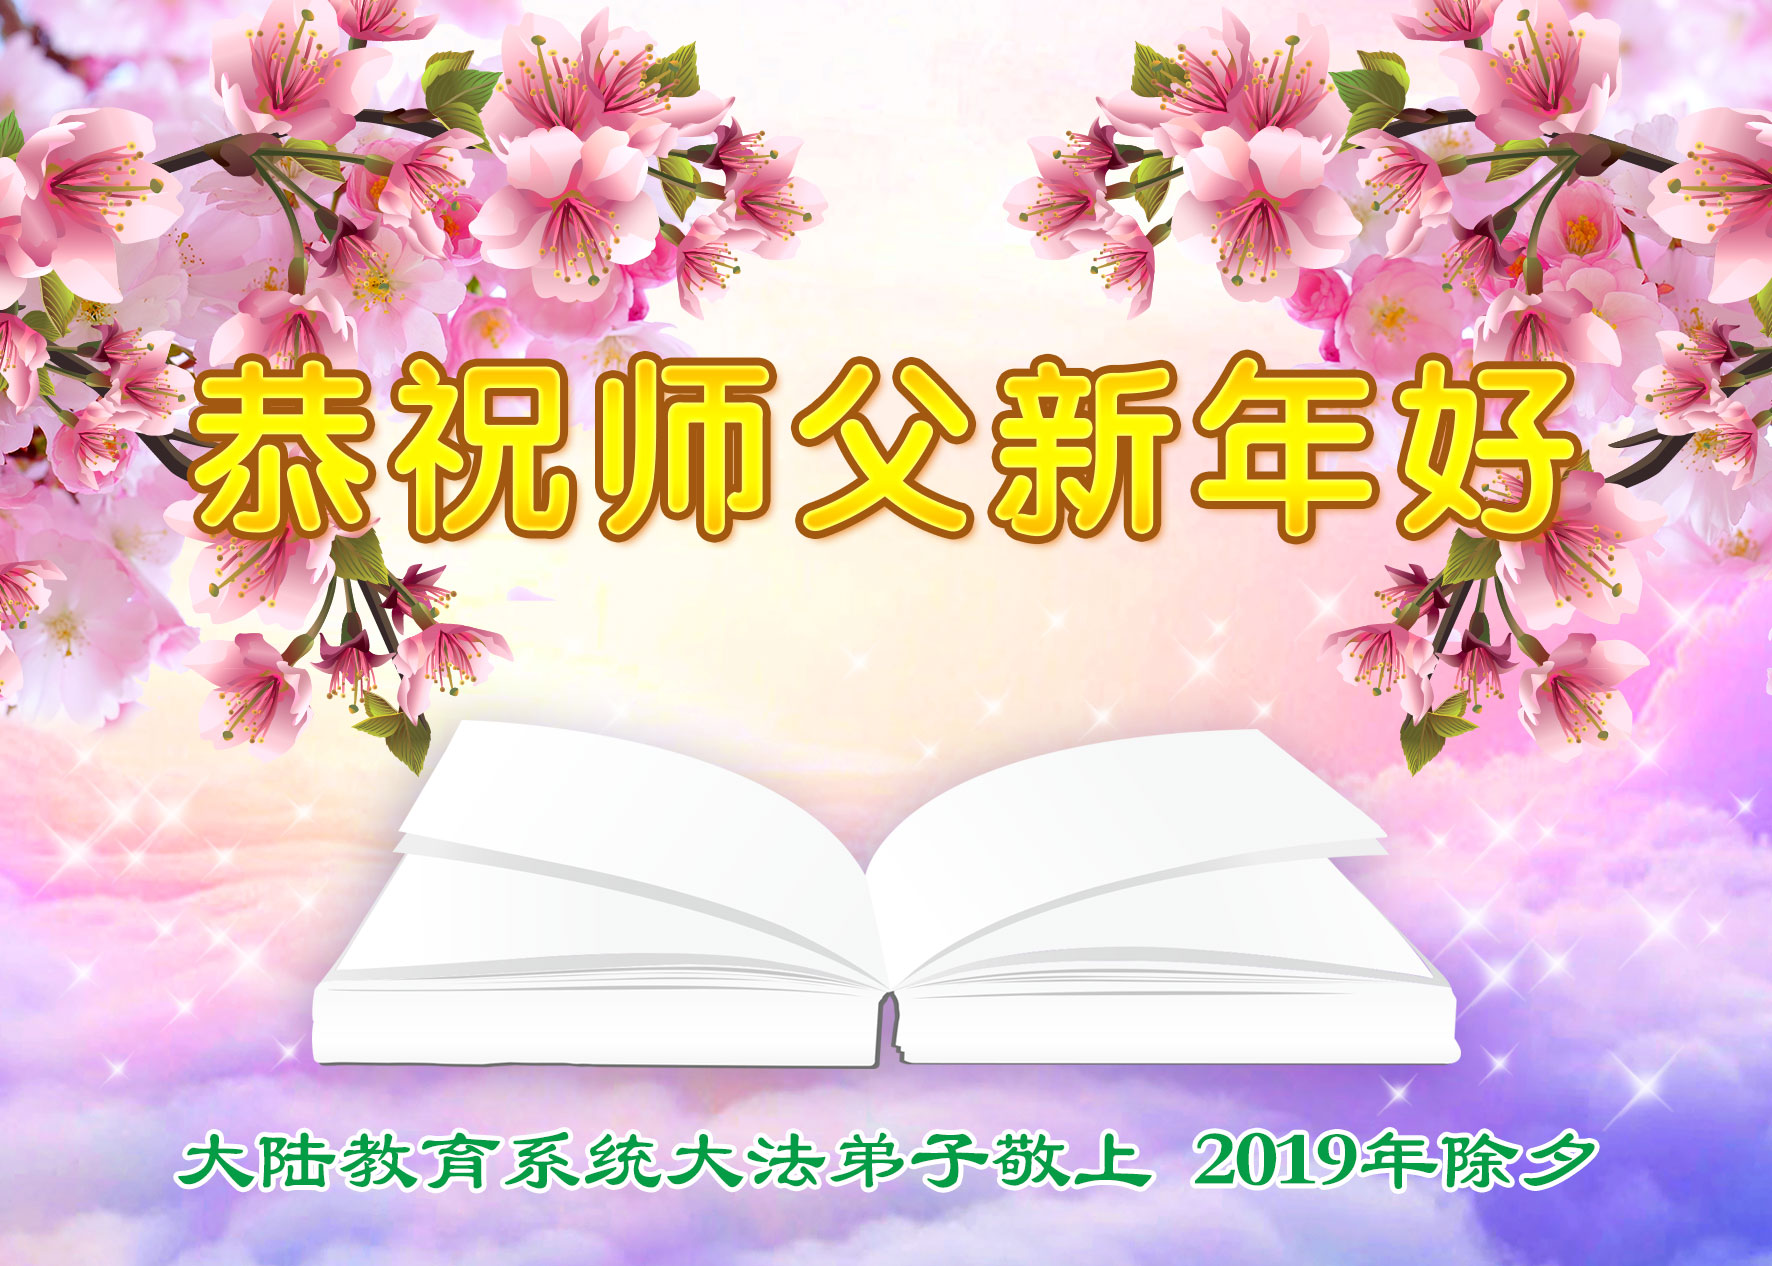 Image for article Les pratiquants de Falun Dafa de plus de 40 professions et industries envoient leurs vœux du Nouvel An chinois au fondateur de la pratique